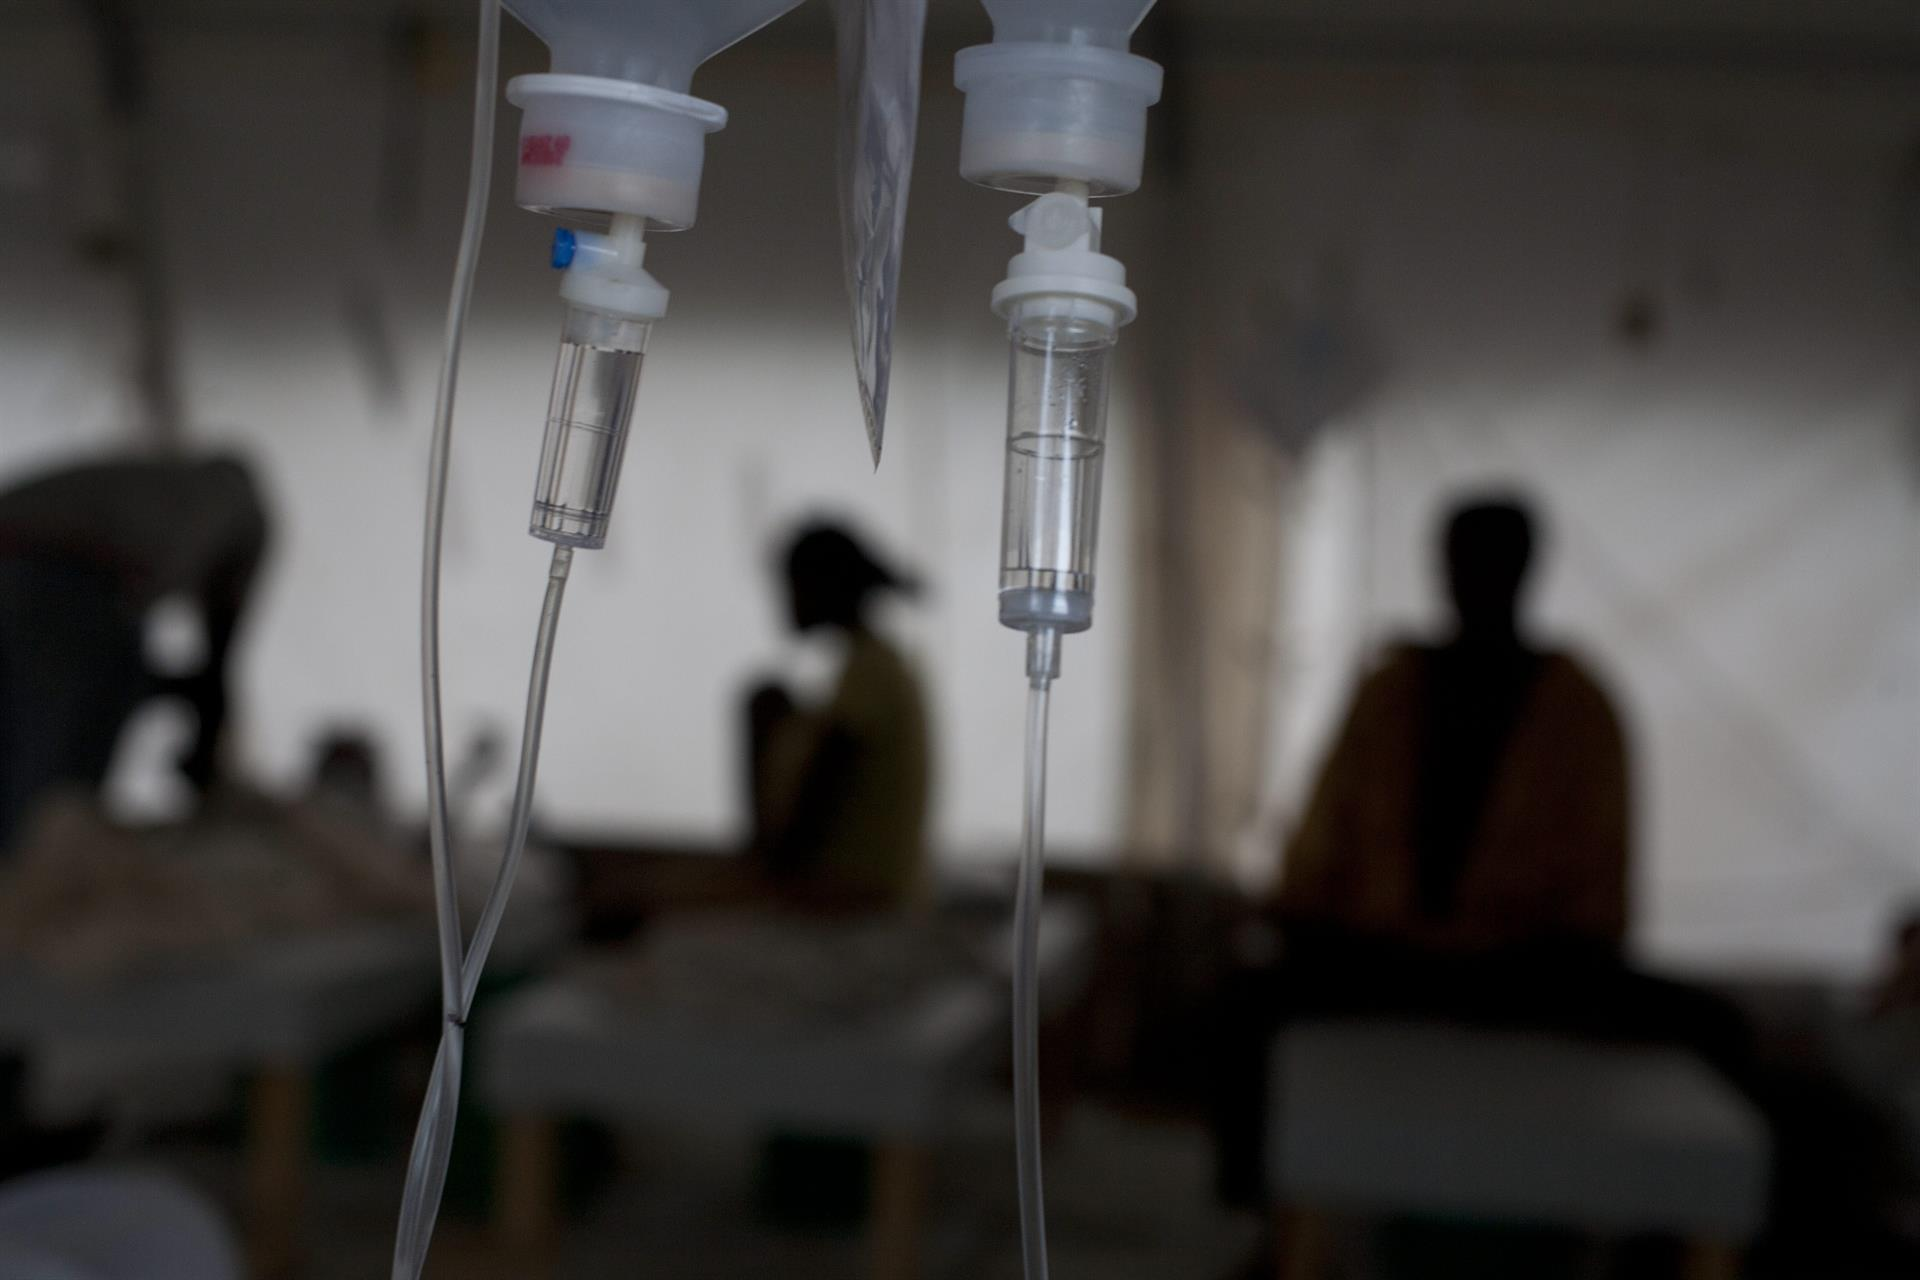 La OIM pide 3.2 millones de dólares para combatir el brote de cólera en Haití